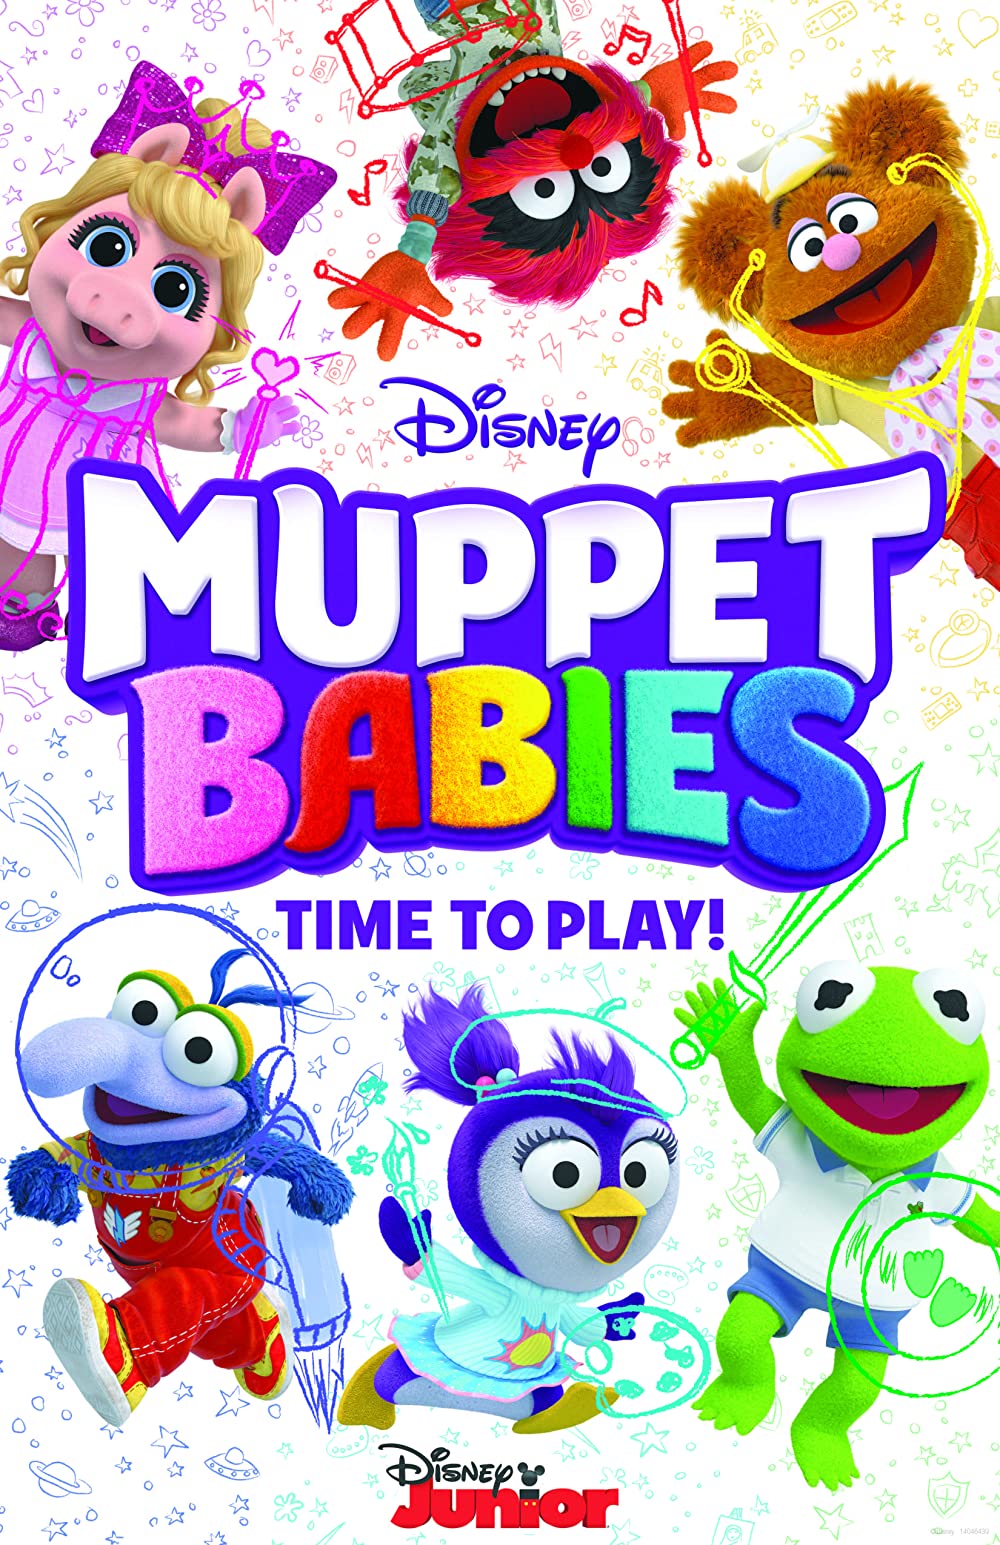 Filmbeschreibung zu Muppet Babies